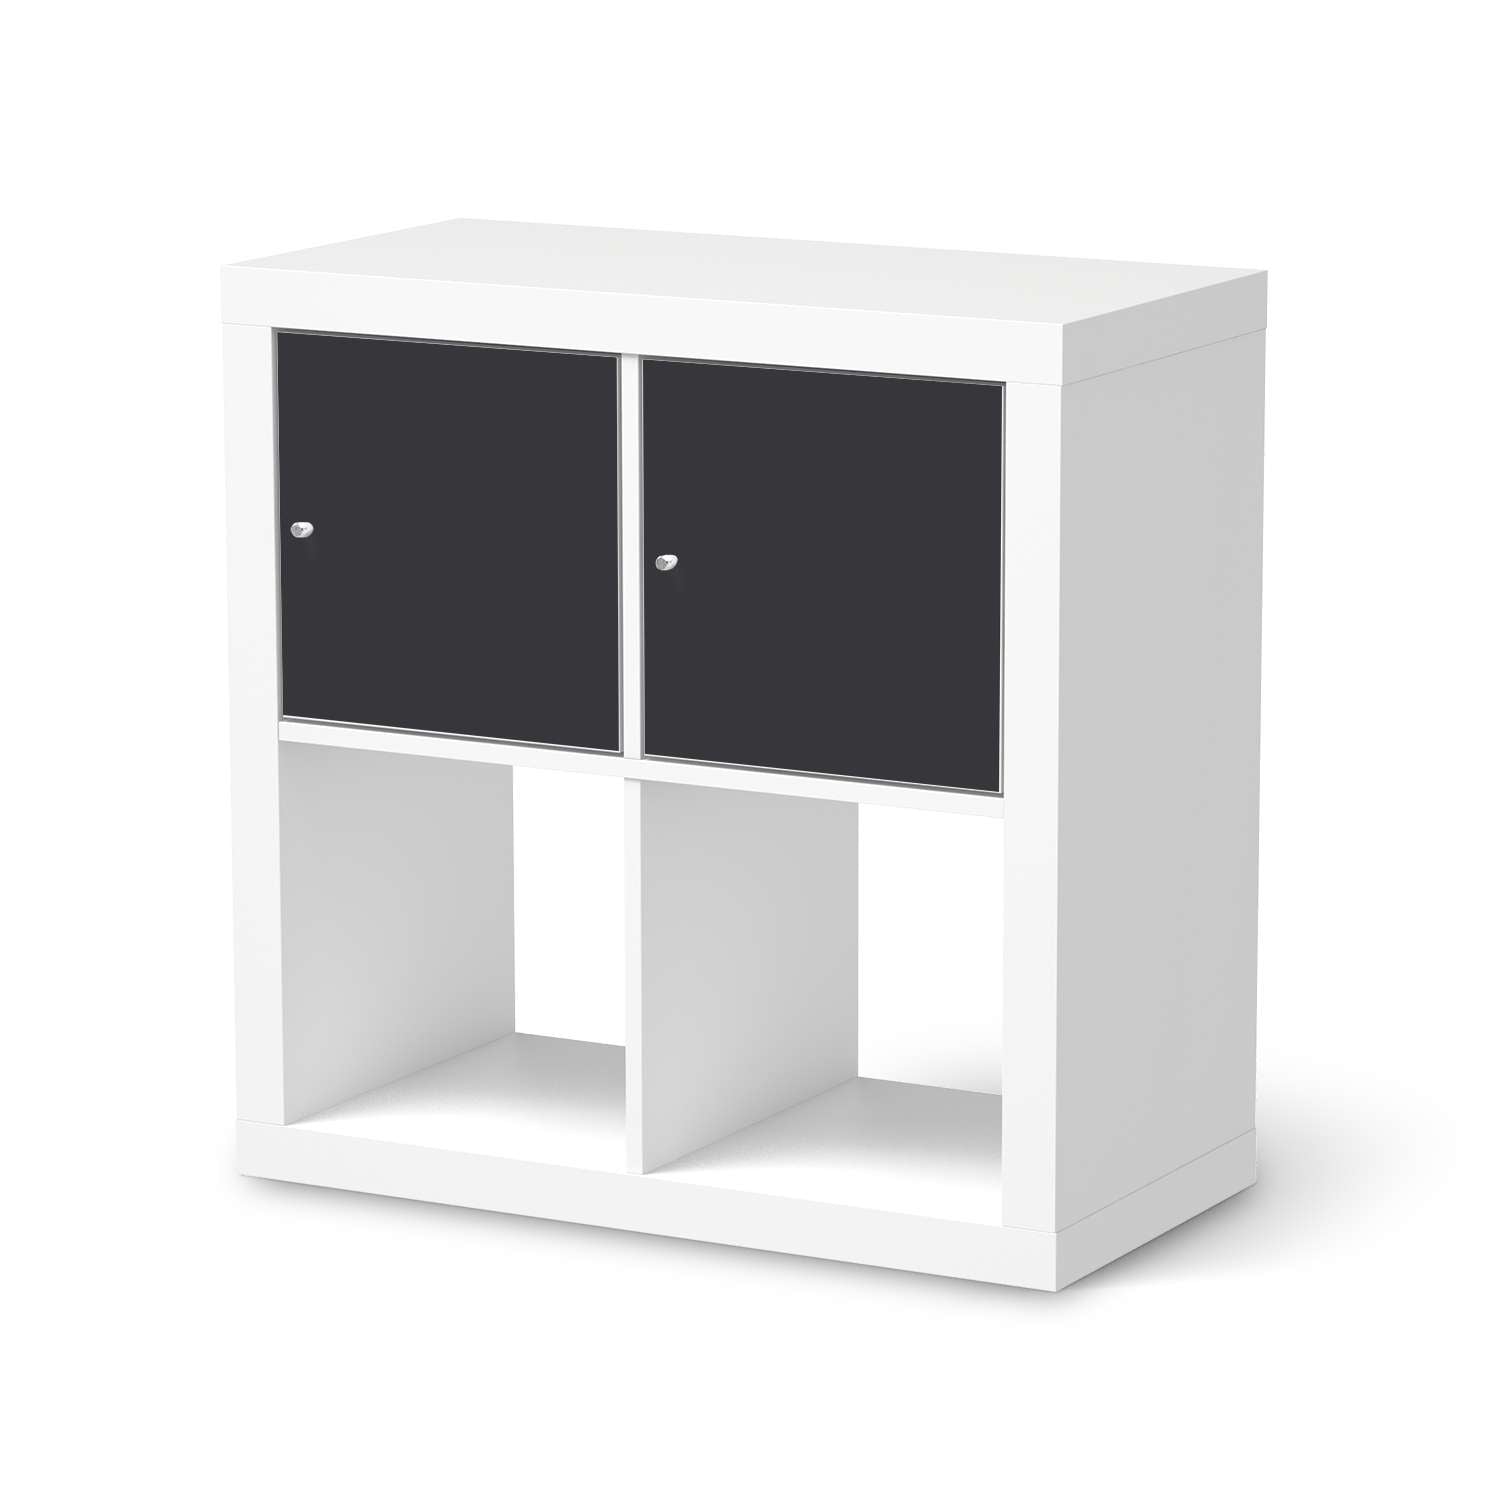 M?belfolie IKEA Kallax Regal 2 T?ren (quer) - Design: Grau Dark von creatisto